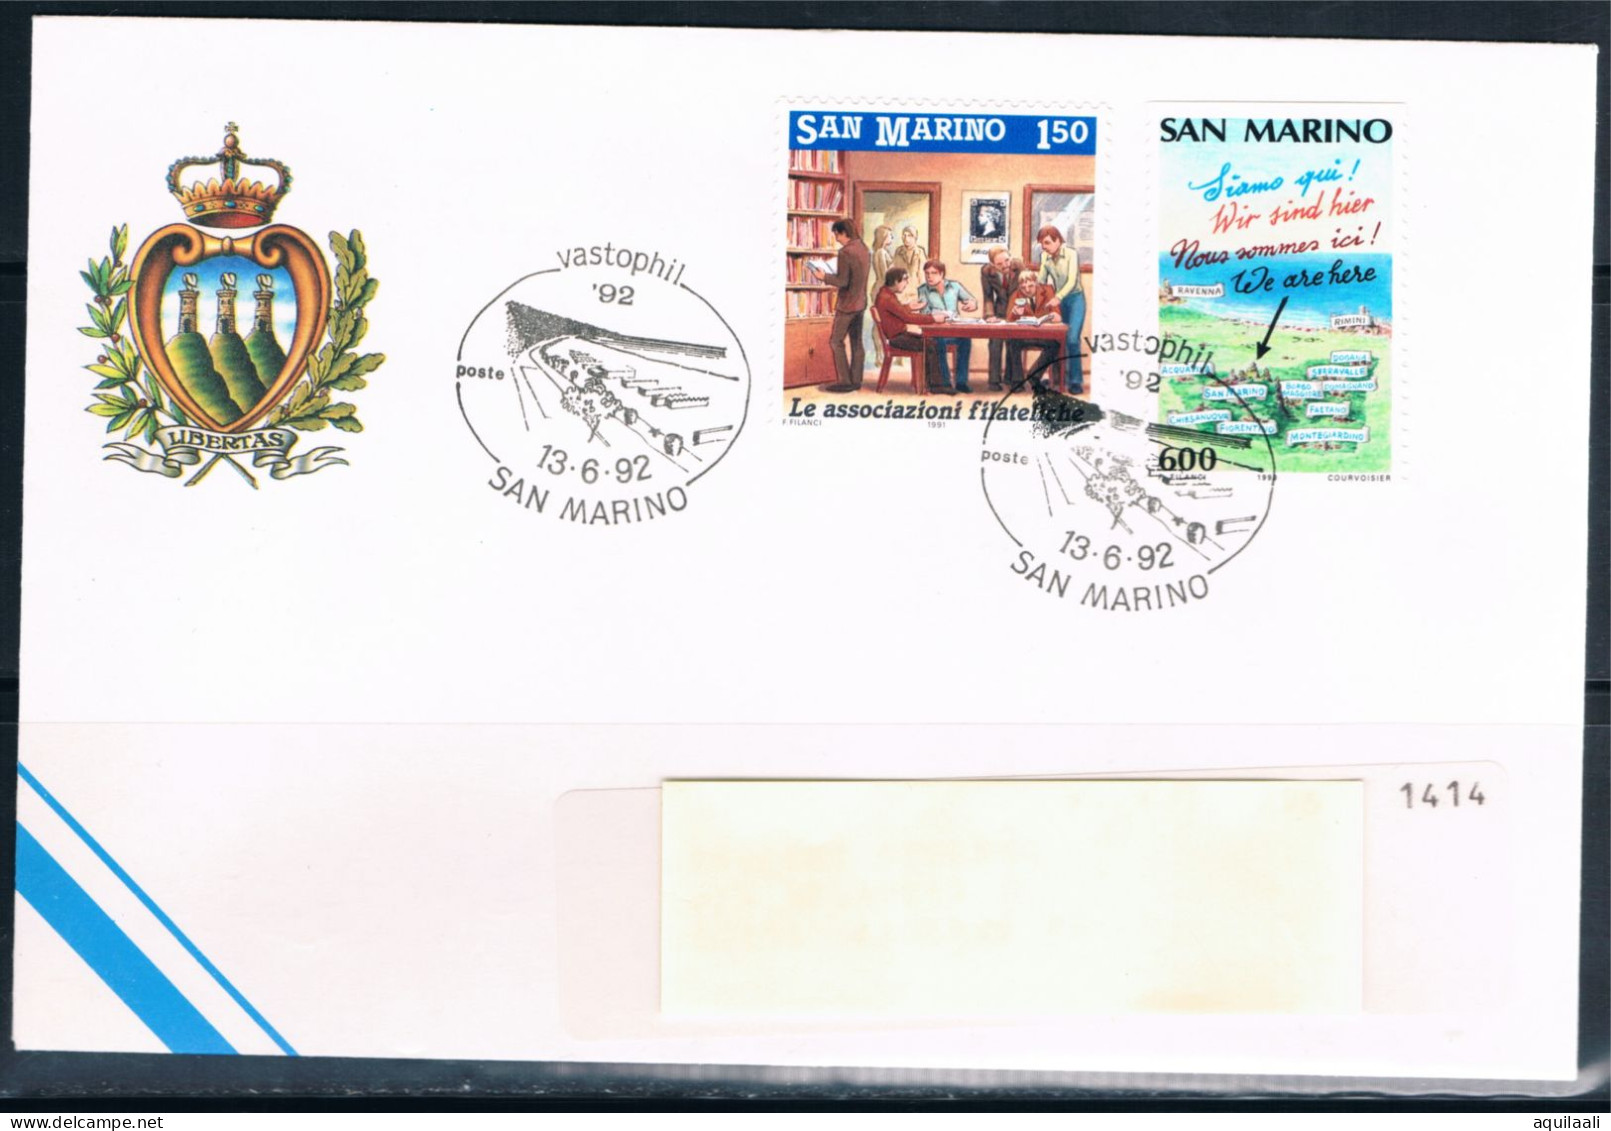 SAN MARINO 1992 - Expo Filatelico "Vastophil '92", Annullo Speciale. - Briefmarkenausstellungen